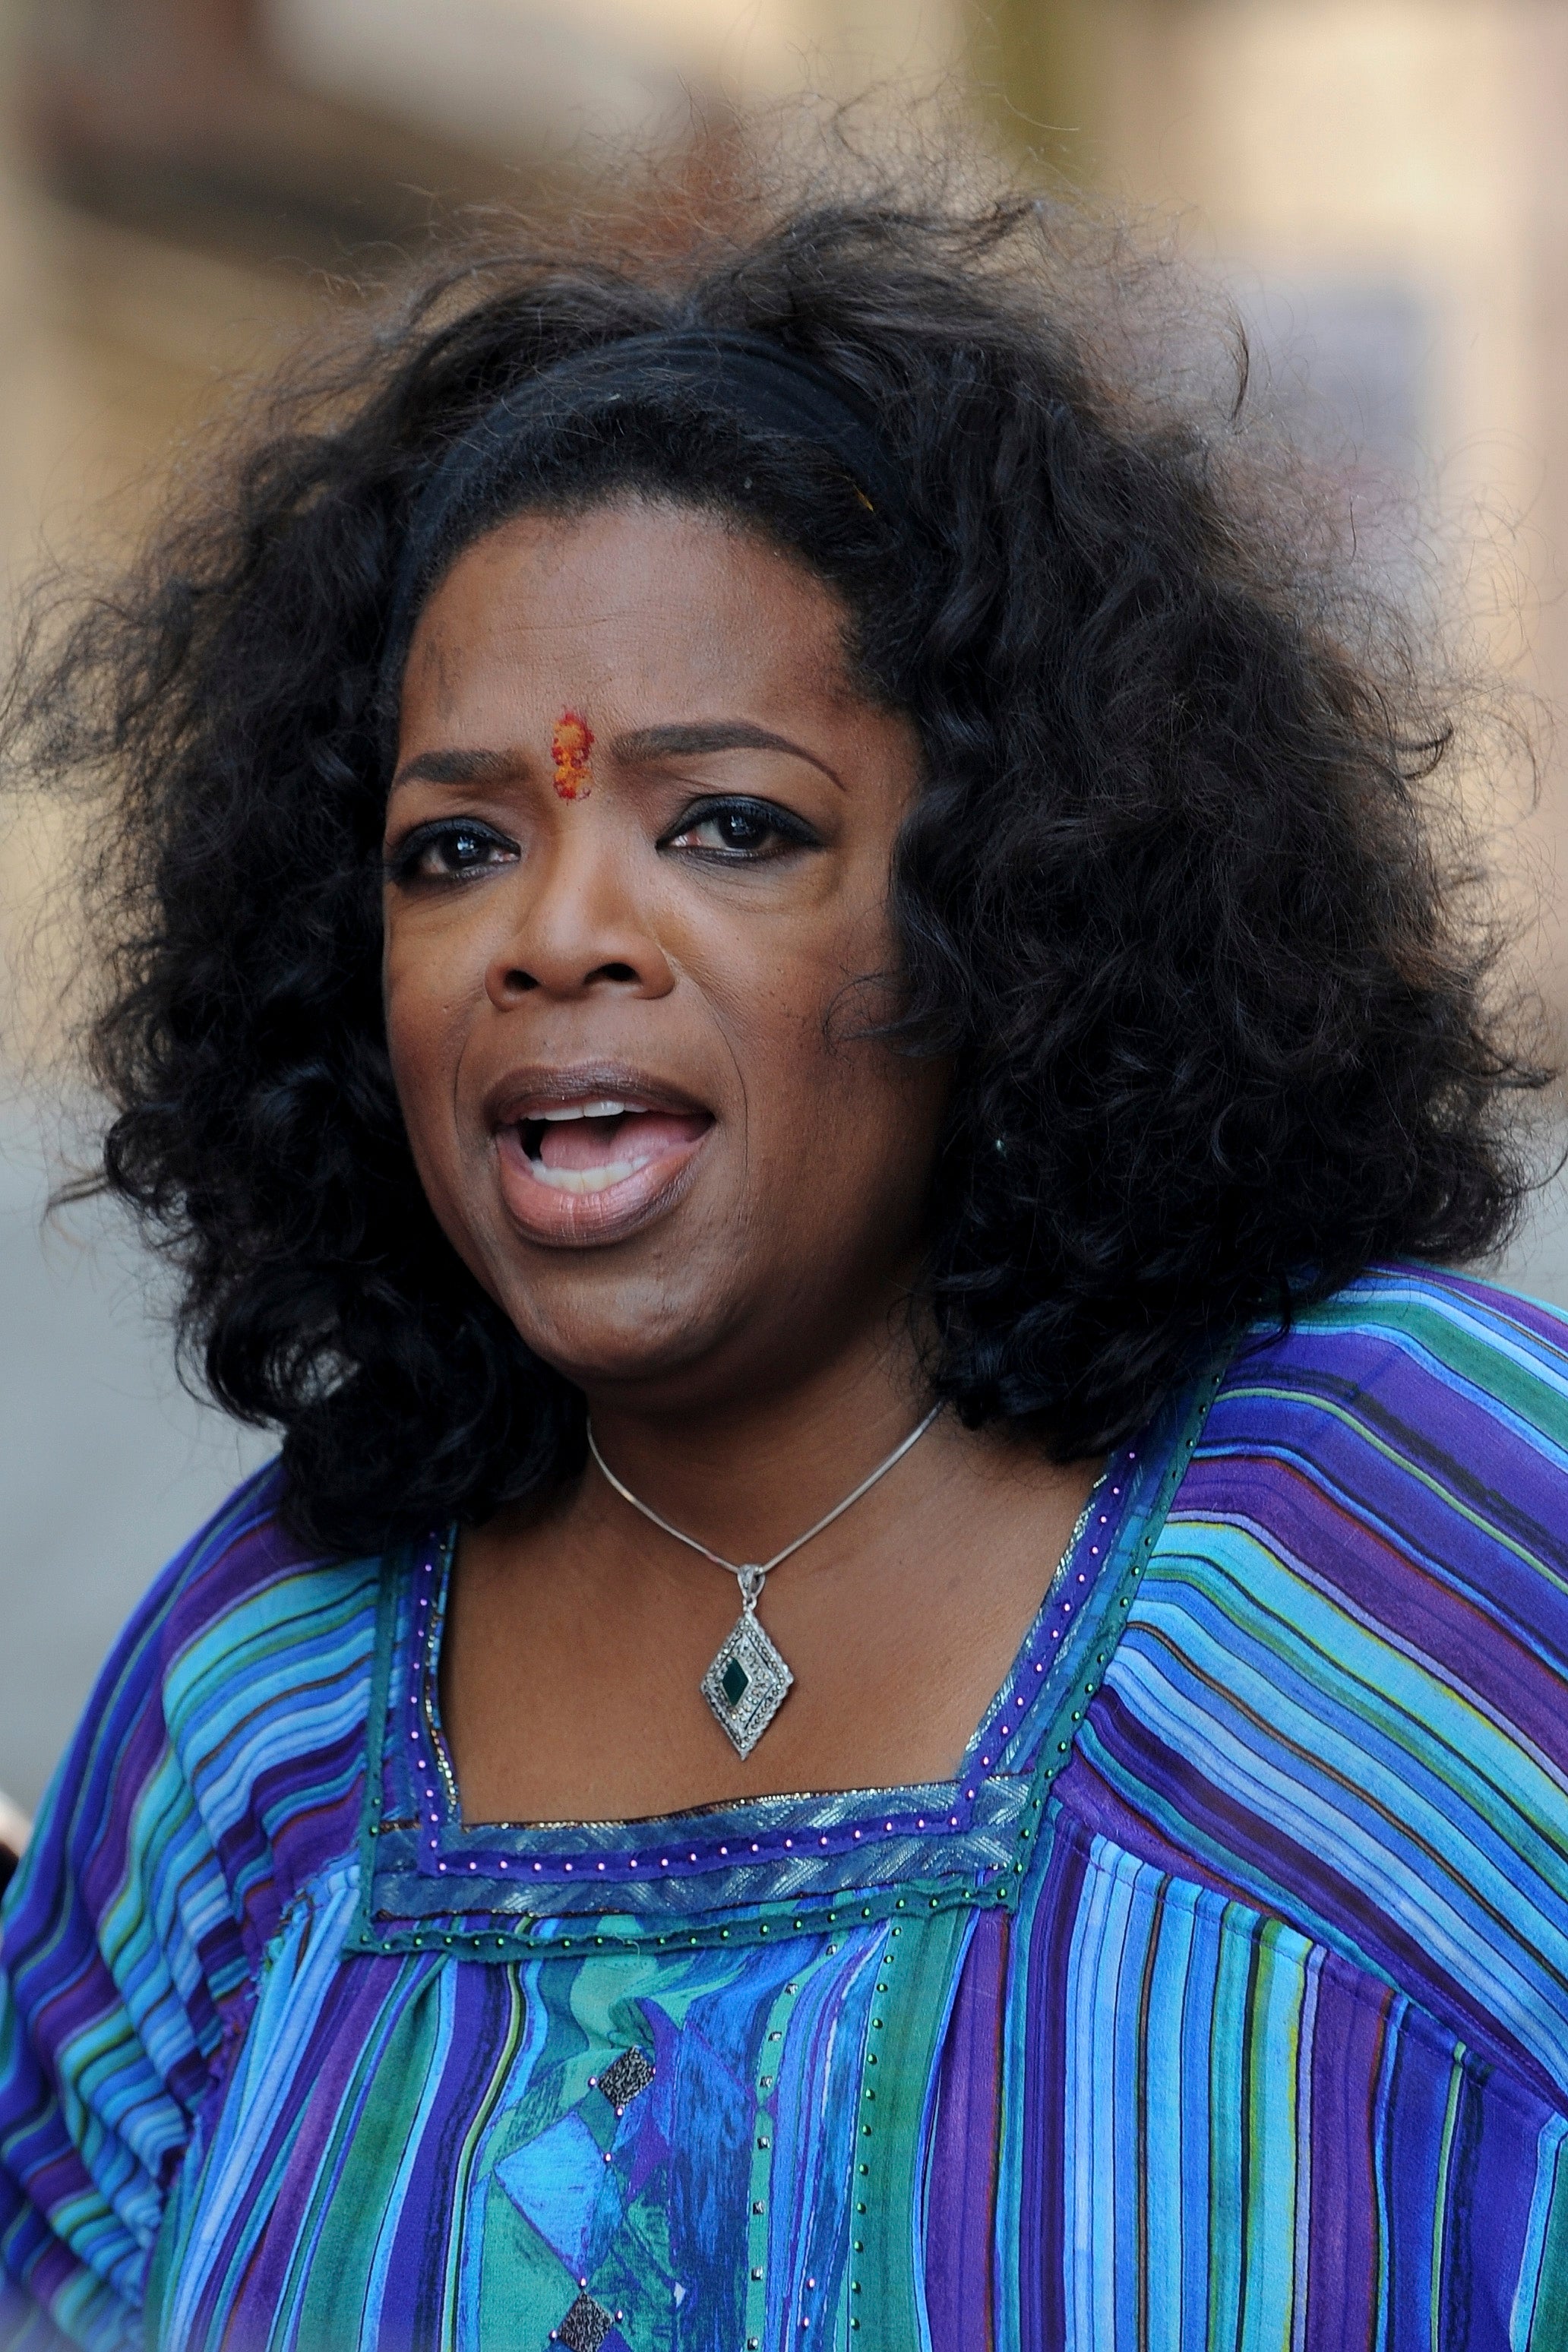 Oprah's Security Causes Stir in India